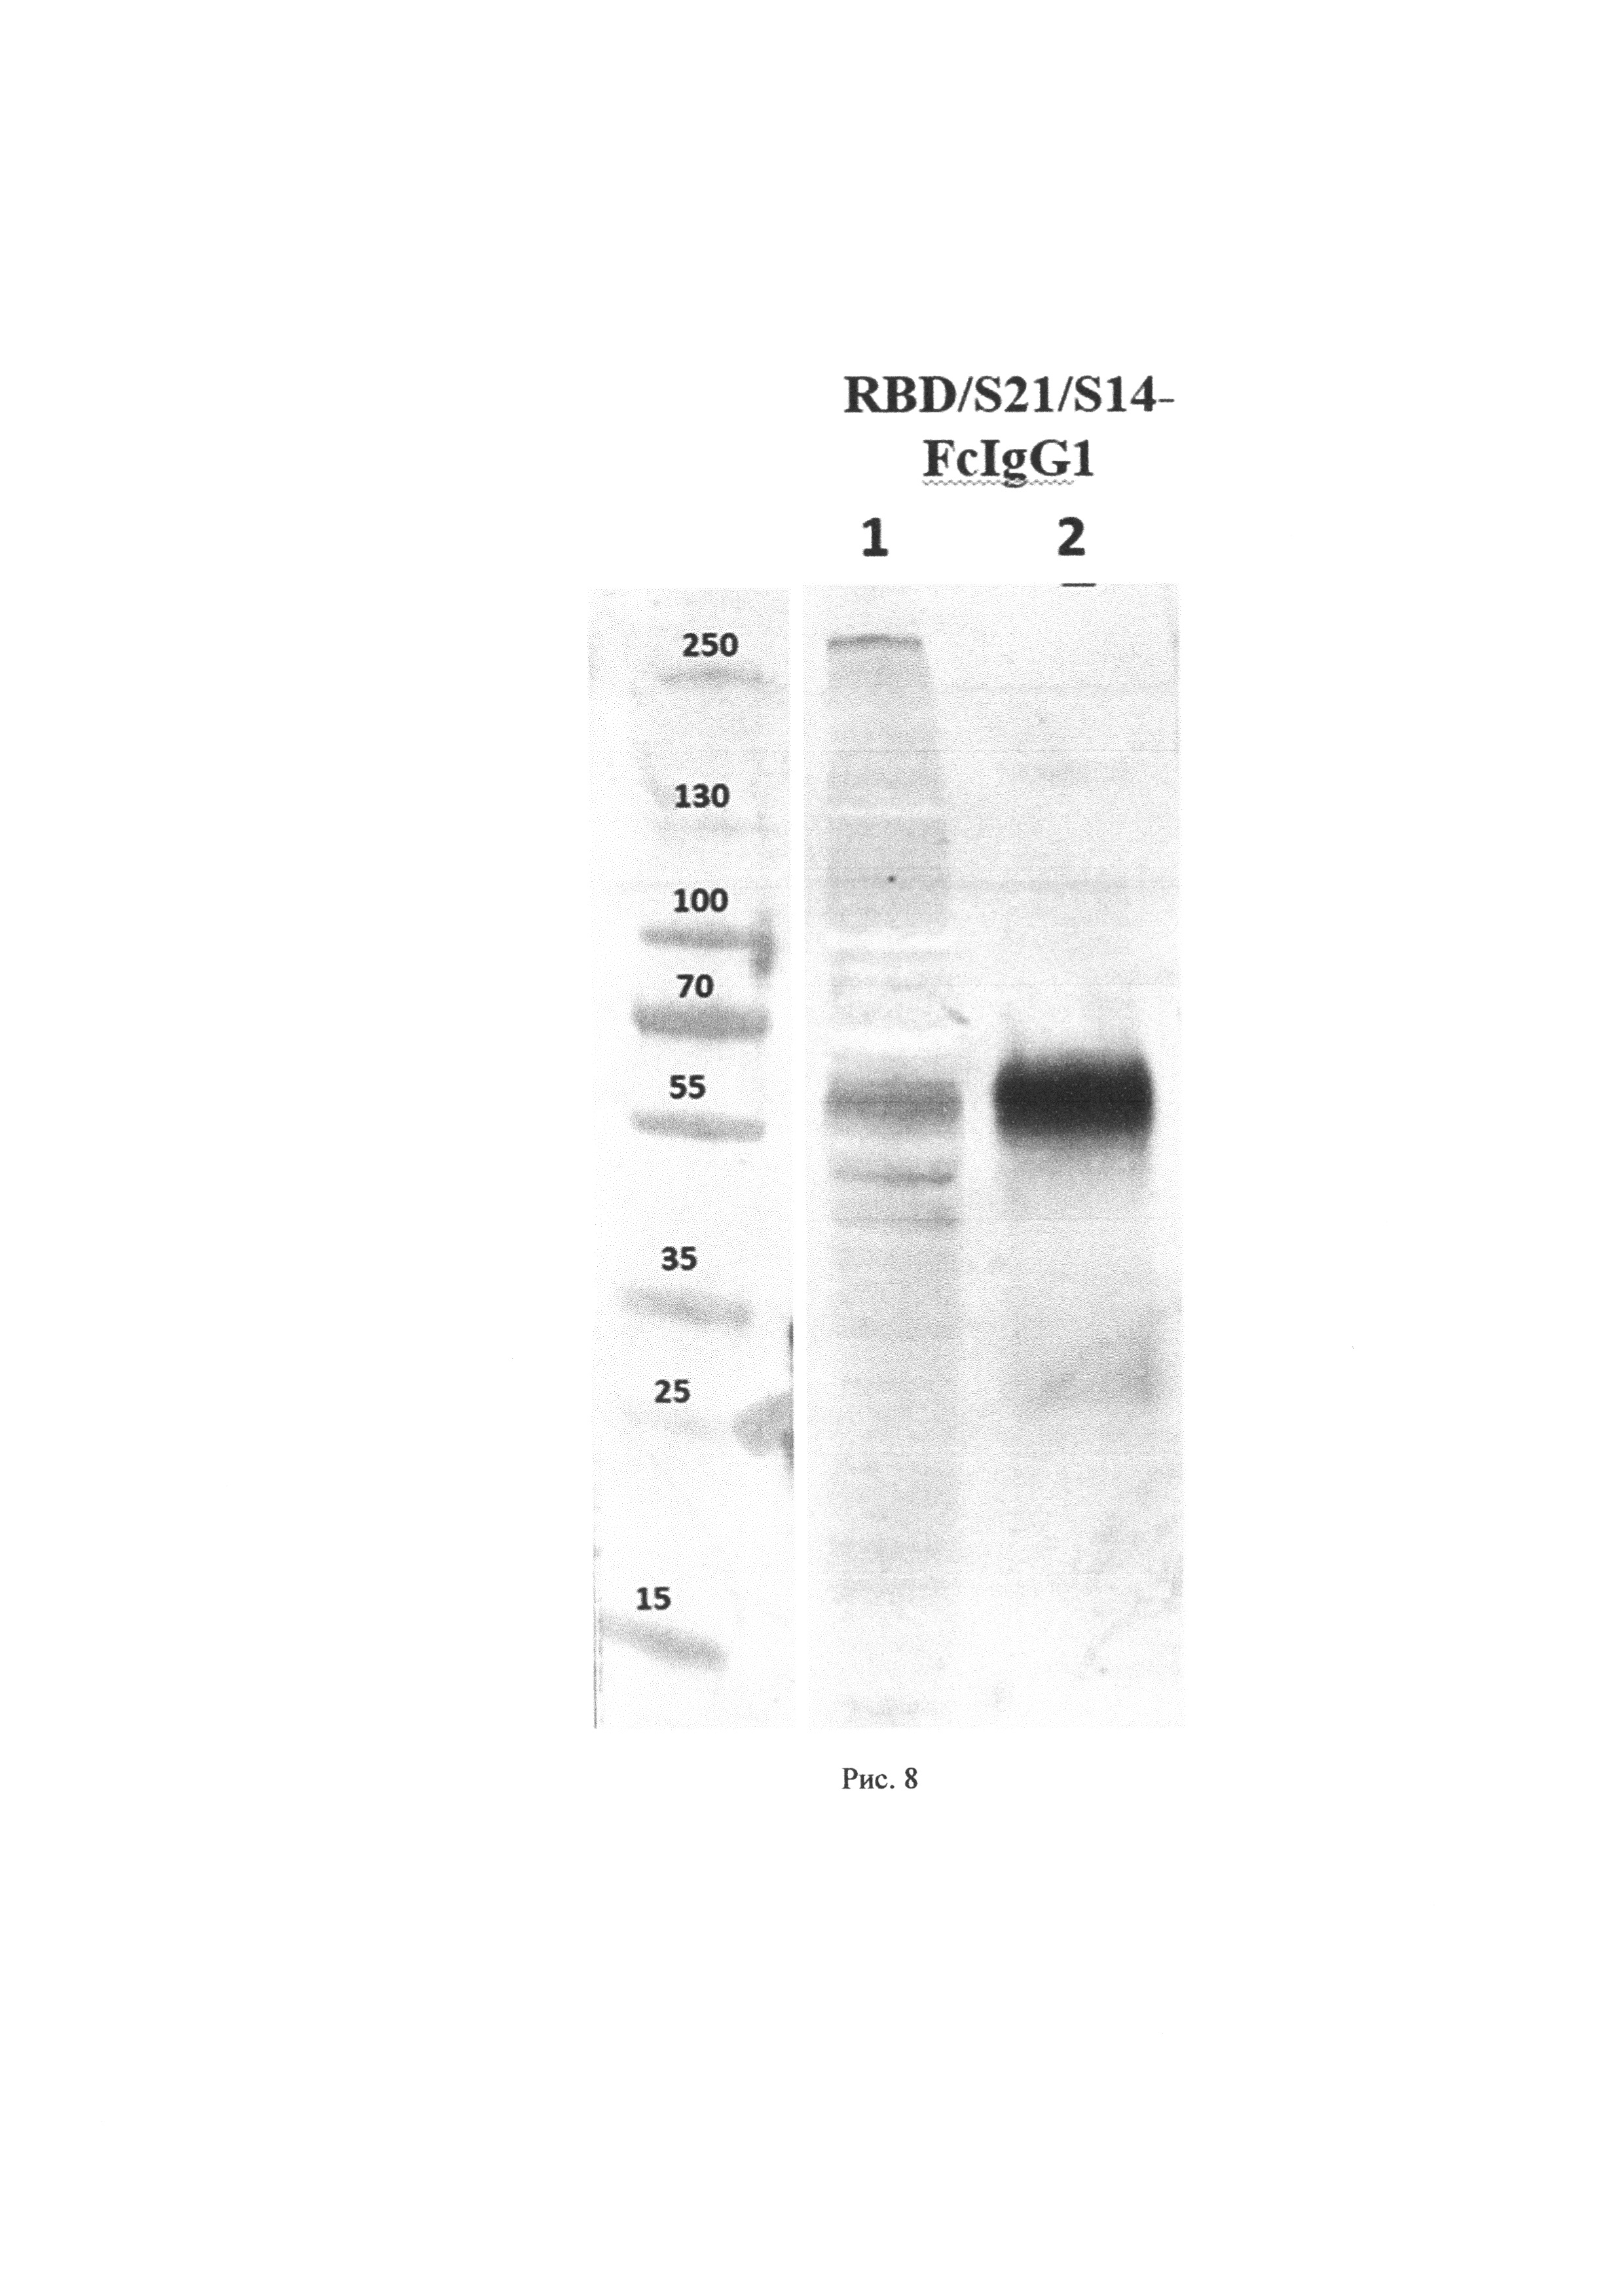 Гибридный ген, состоящий из рецептора RBD поверхностного белка S коронавируса SARS-CoV-2, эпитопов S14P5 и S21P2, Fc-фрагмента, для получения рекомбинантного антигена и его применения в составе вакцинной композиции против коронавирусной инфекции